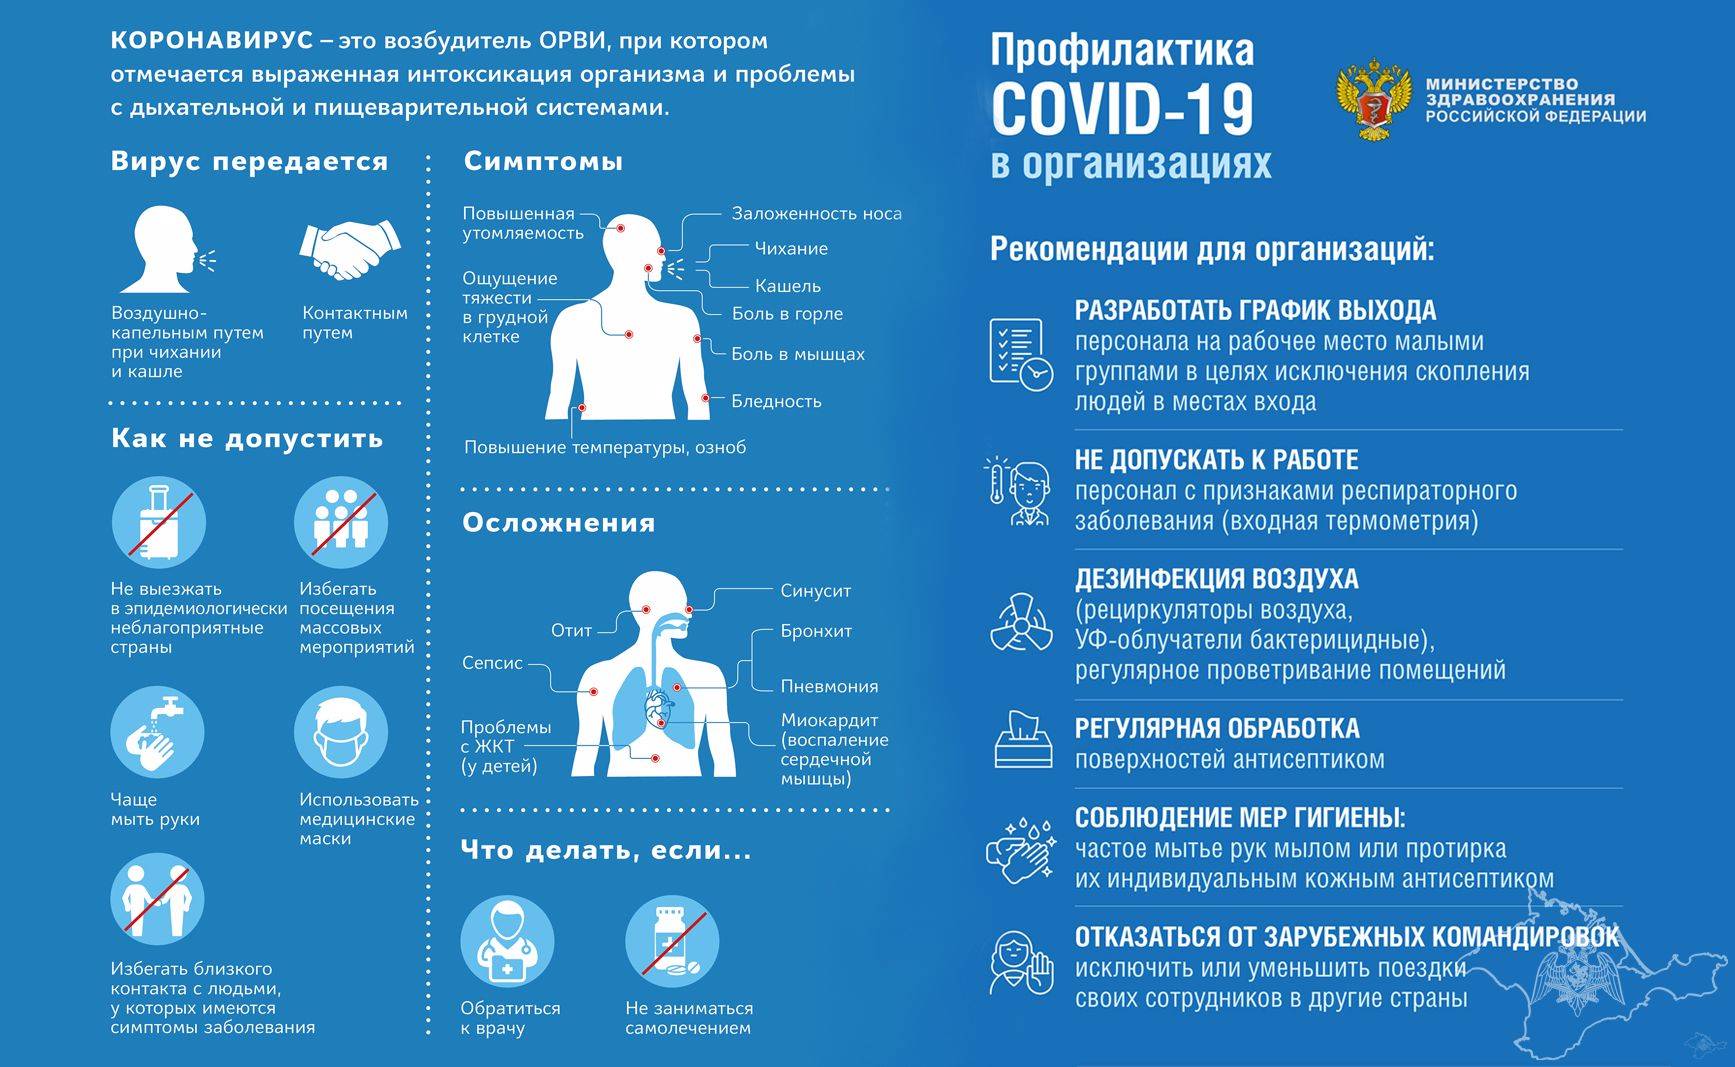 О рекомендациях по дезинфекции помещений в период пандемии коронавируса